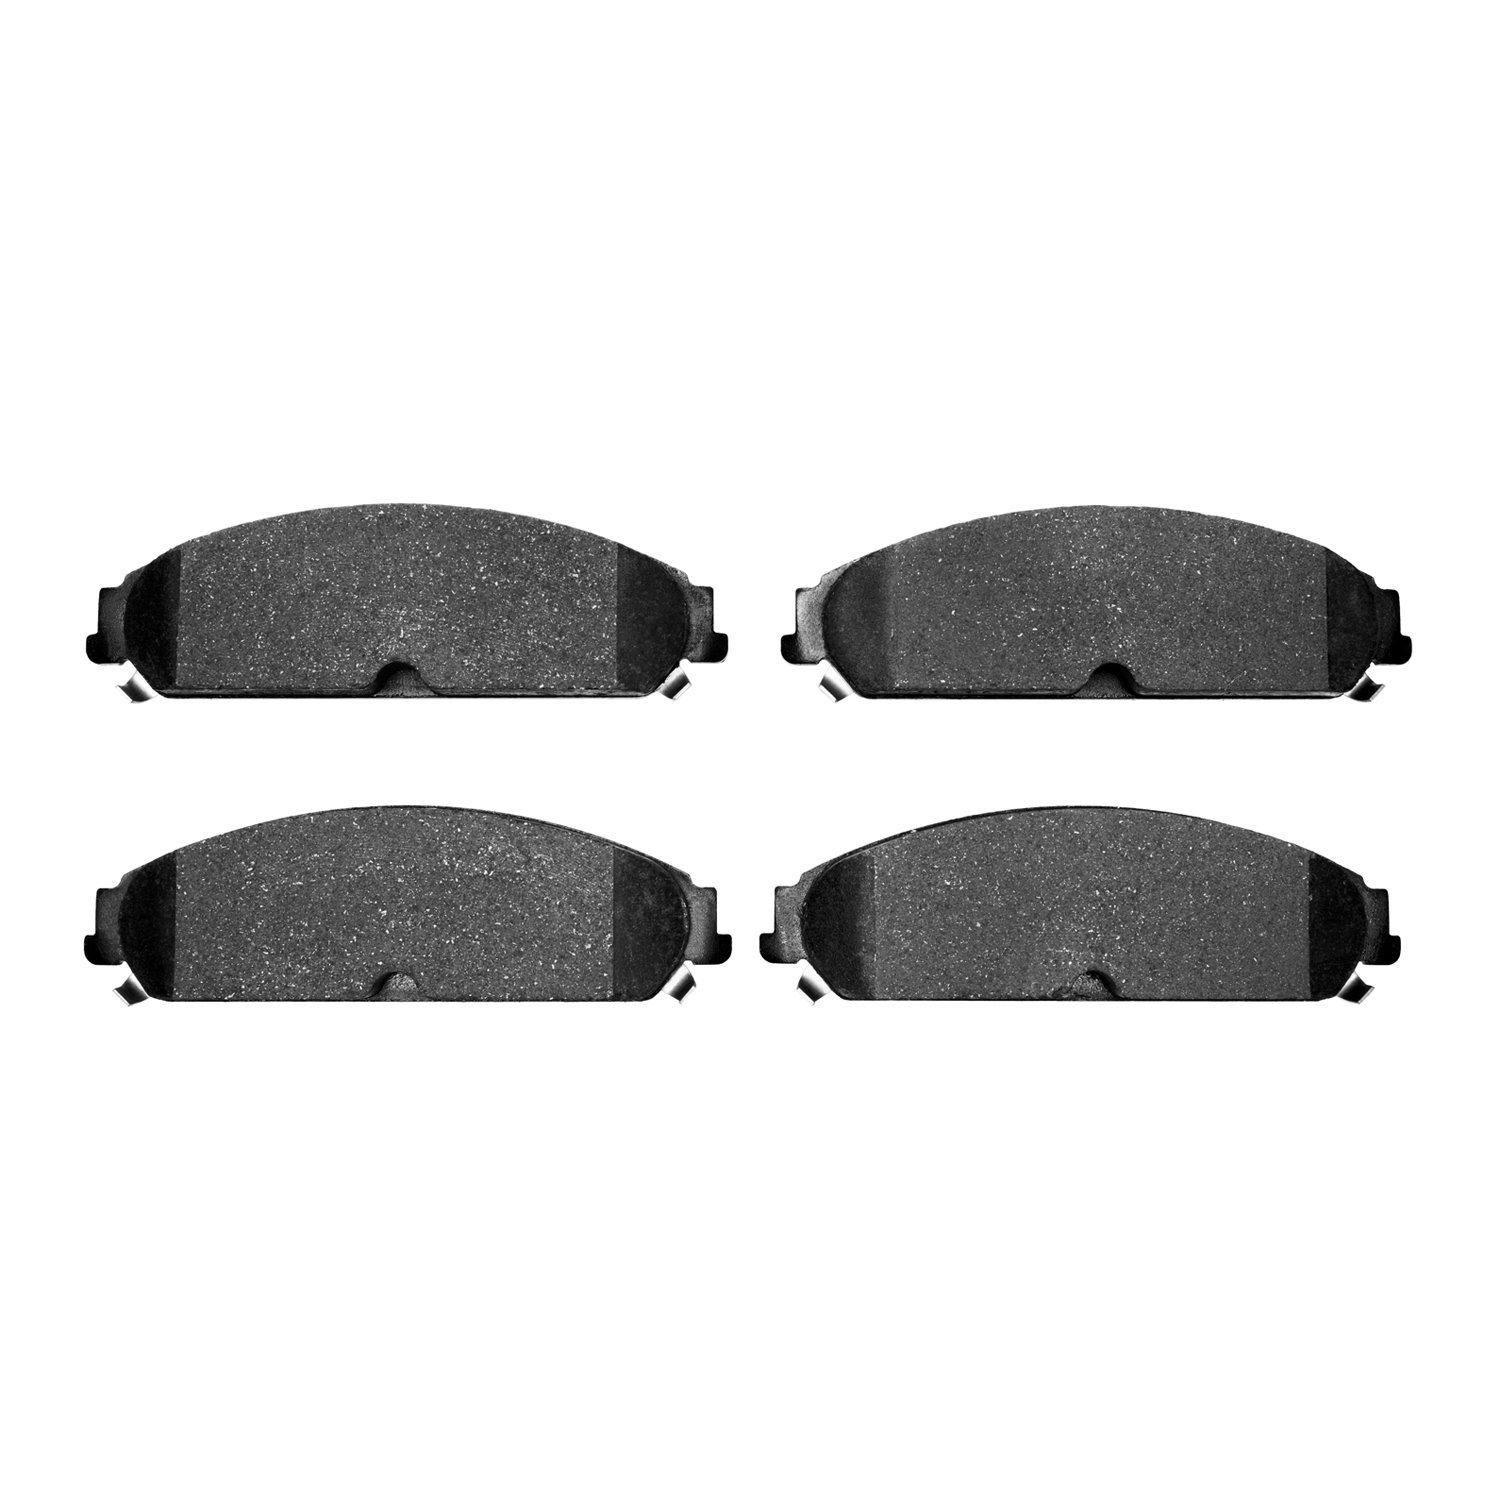 1214-1058-00 Heavy-Duty Semi-Metallic Brake Pads, Fits Select Mopar, Position: Front